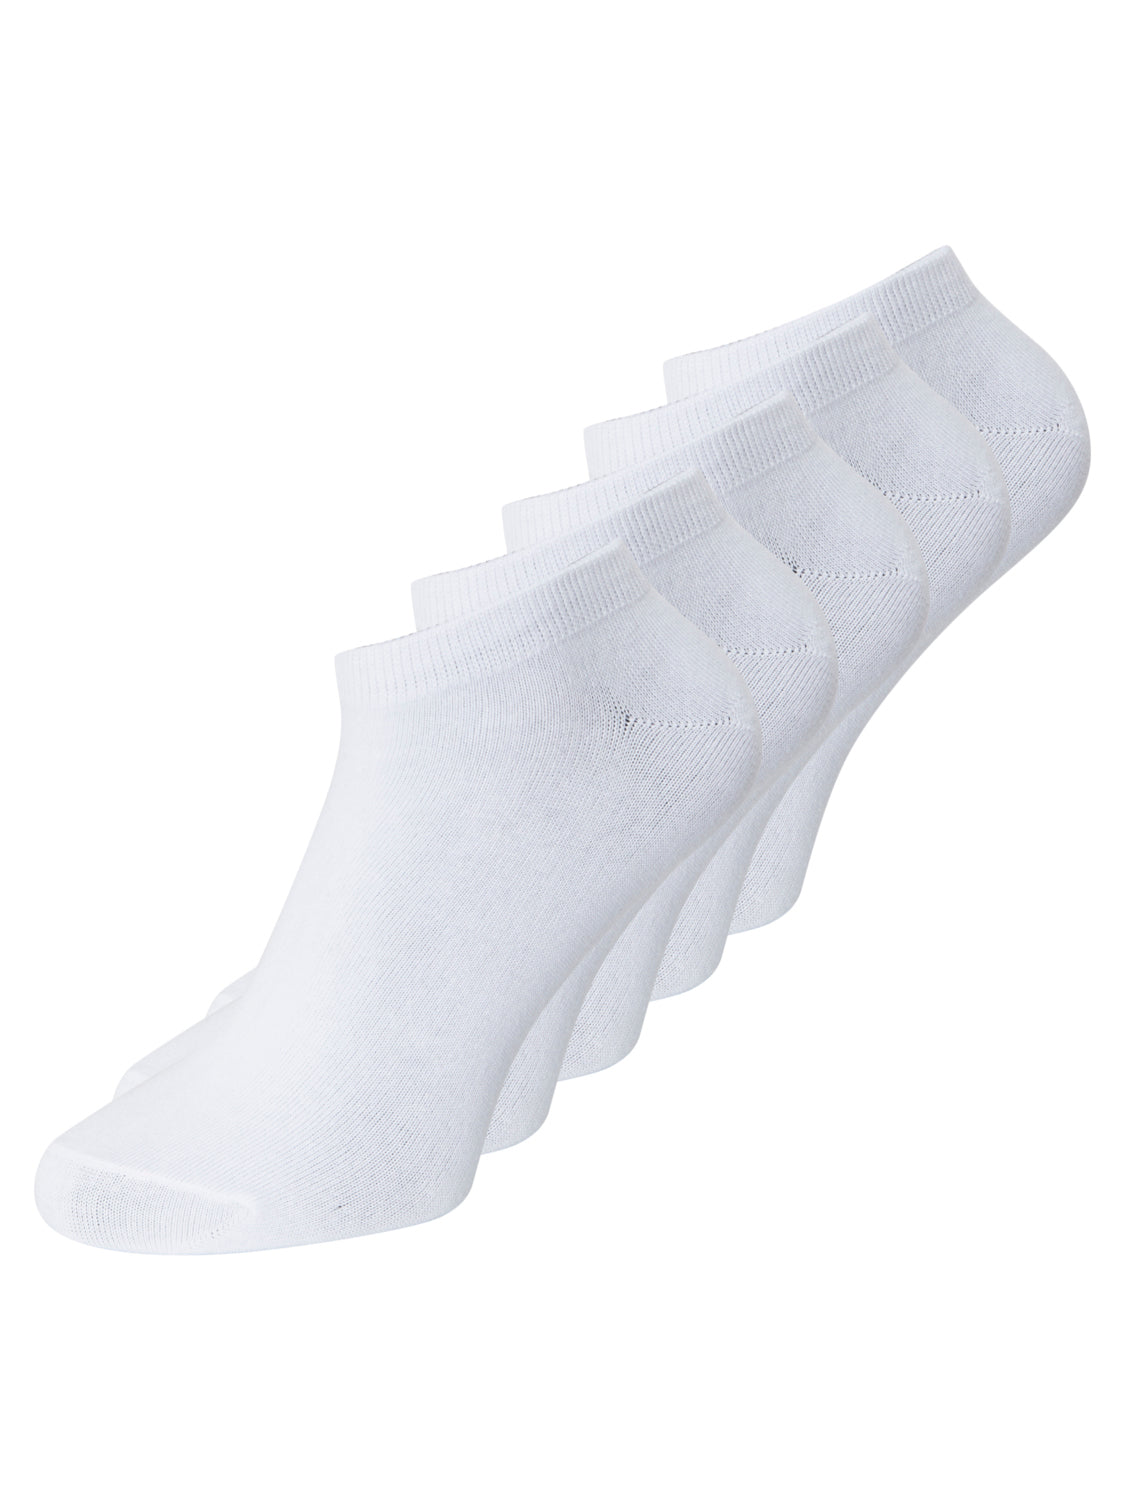 Pack de 5 calcetines Dongo - Blanco